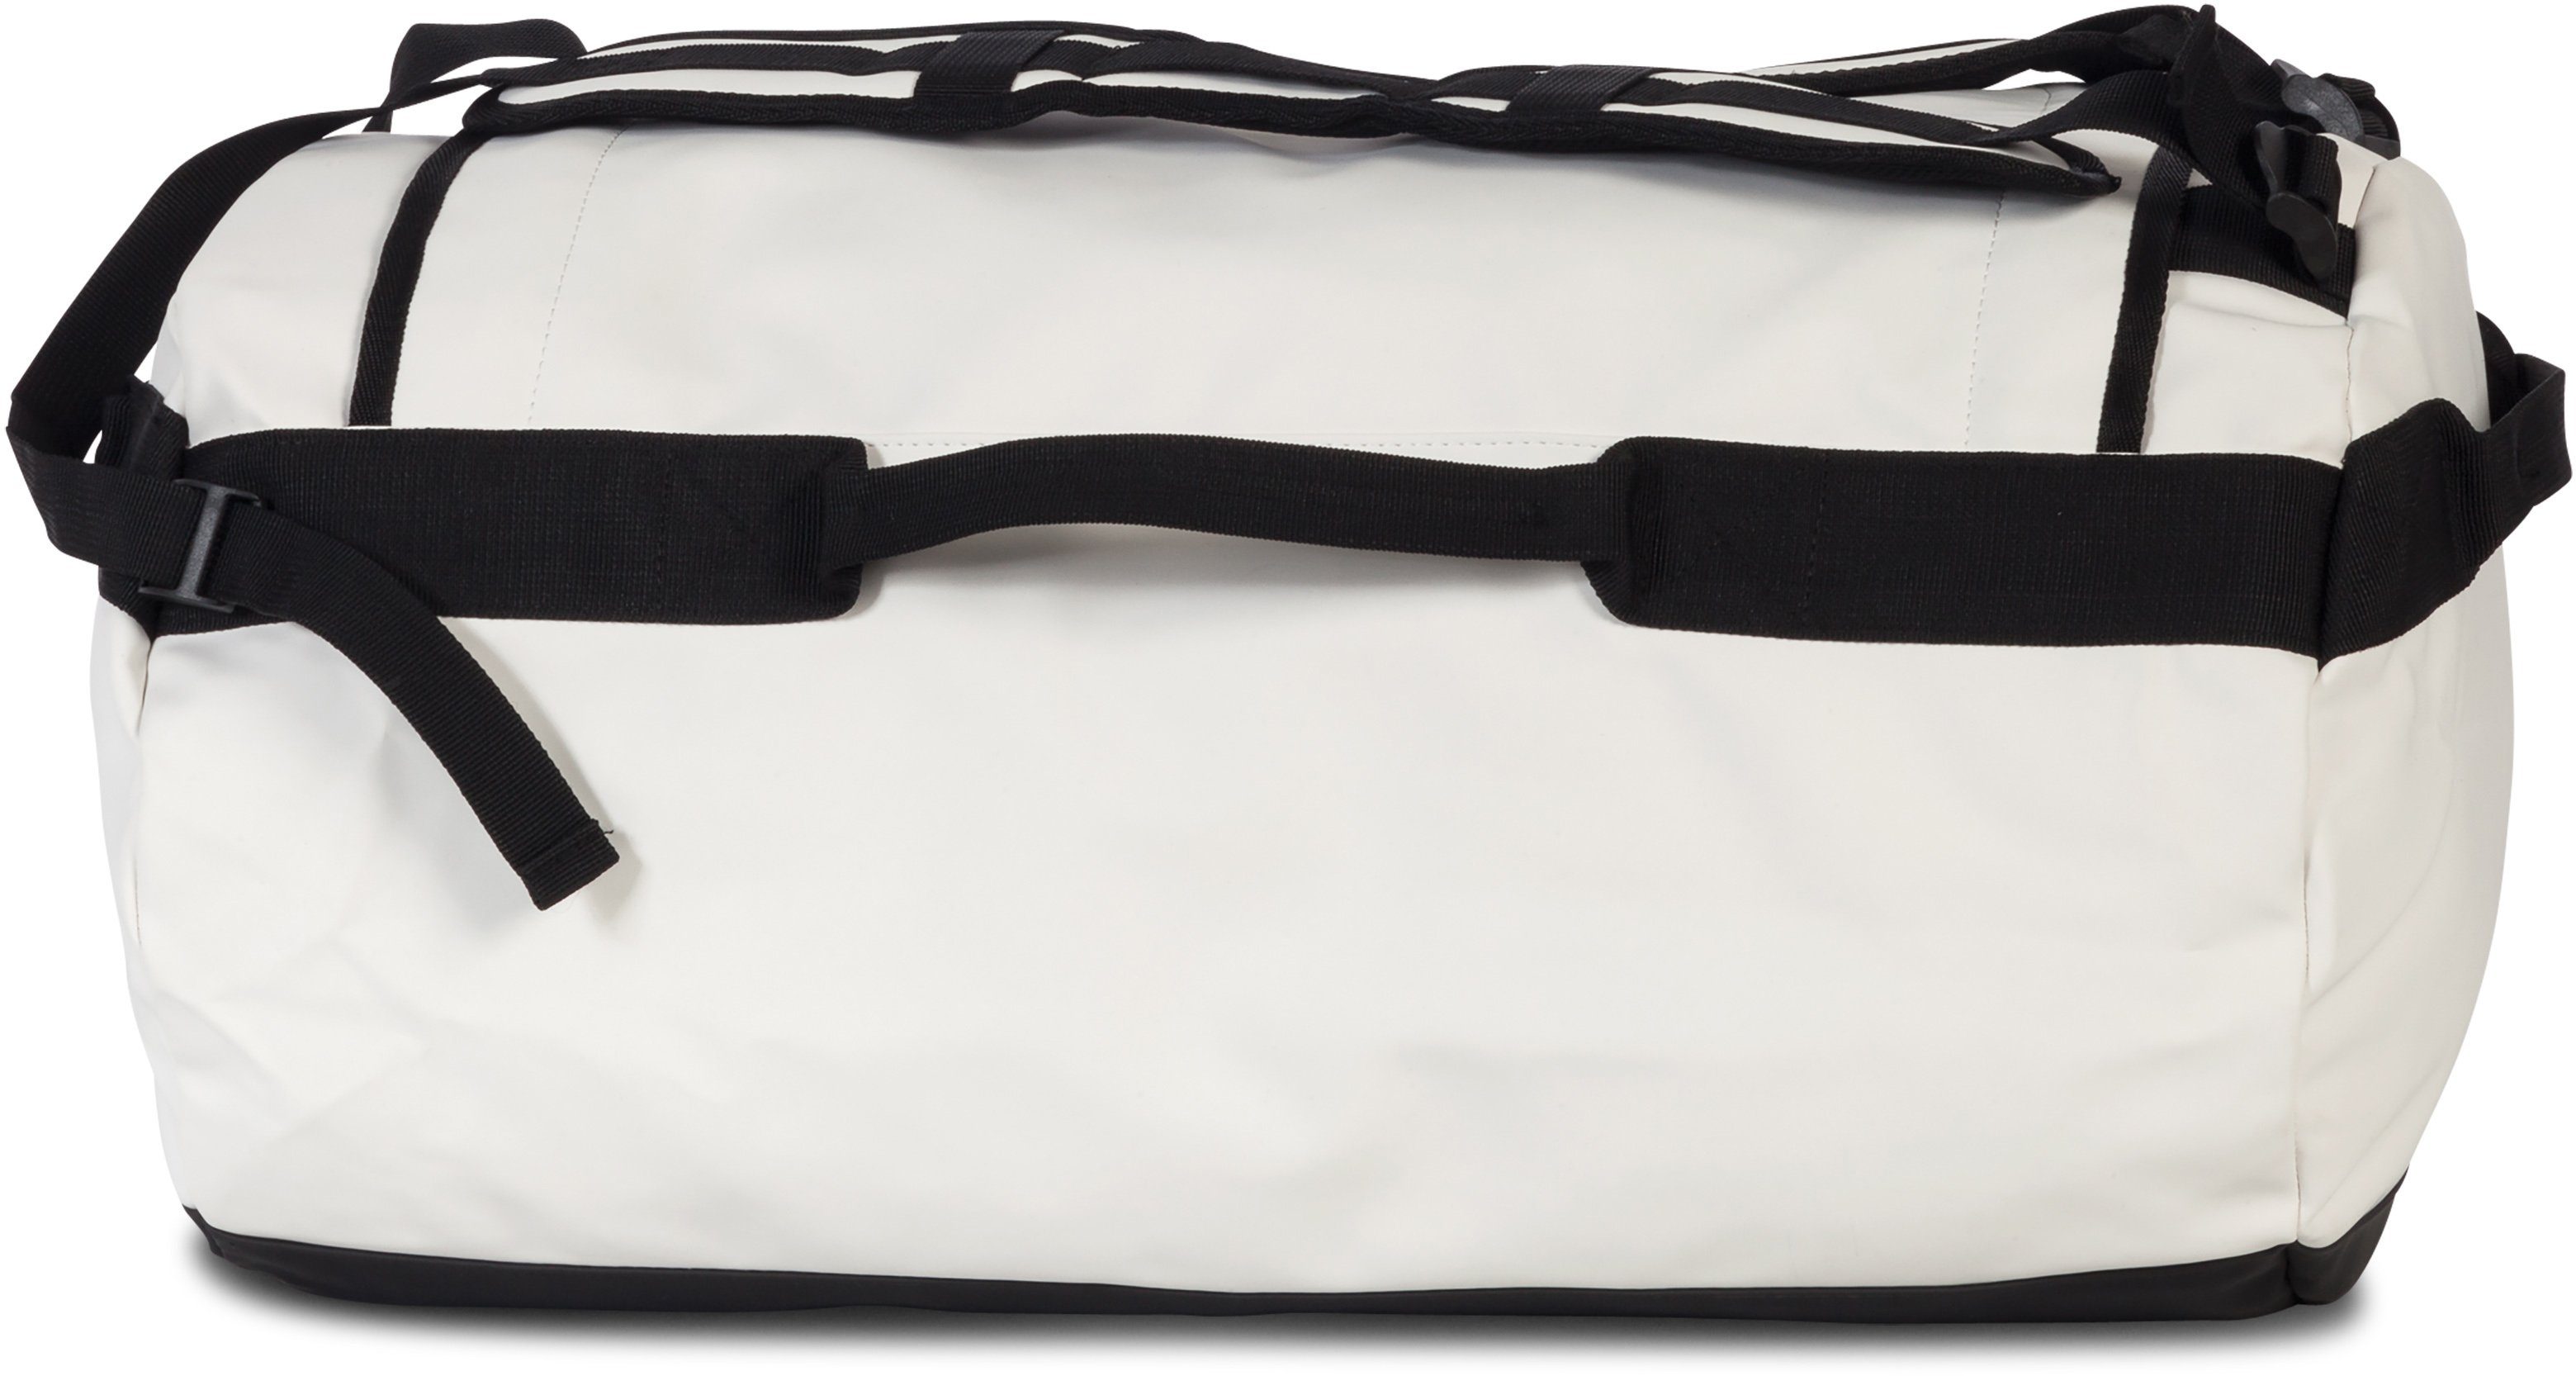 Bench. Reisetasche Hydro, Material weiß, aus weiss wasserabweisendem mit Rucksackfunktion